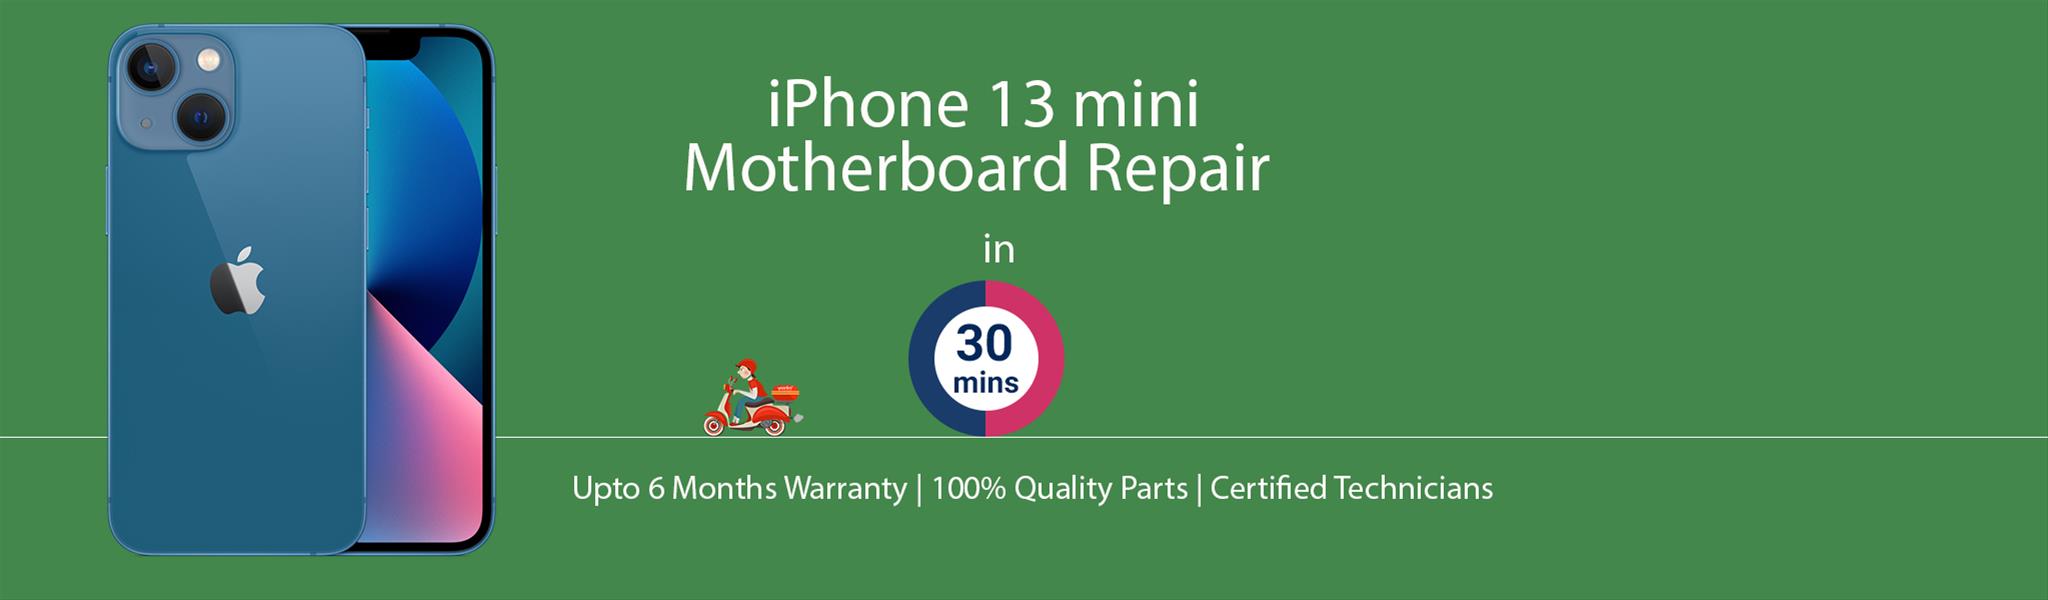 iphone-13-mini-motherboard-repair.jpg